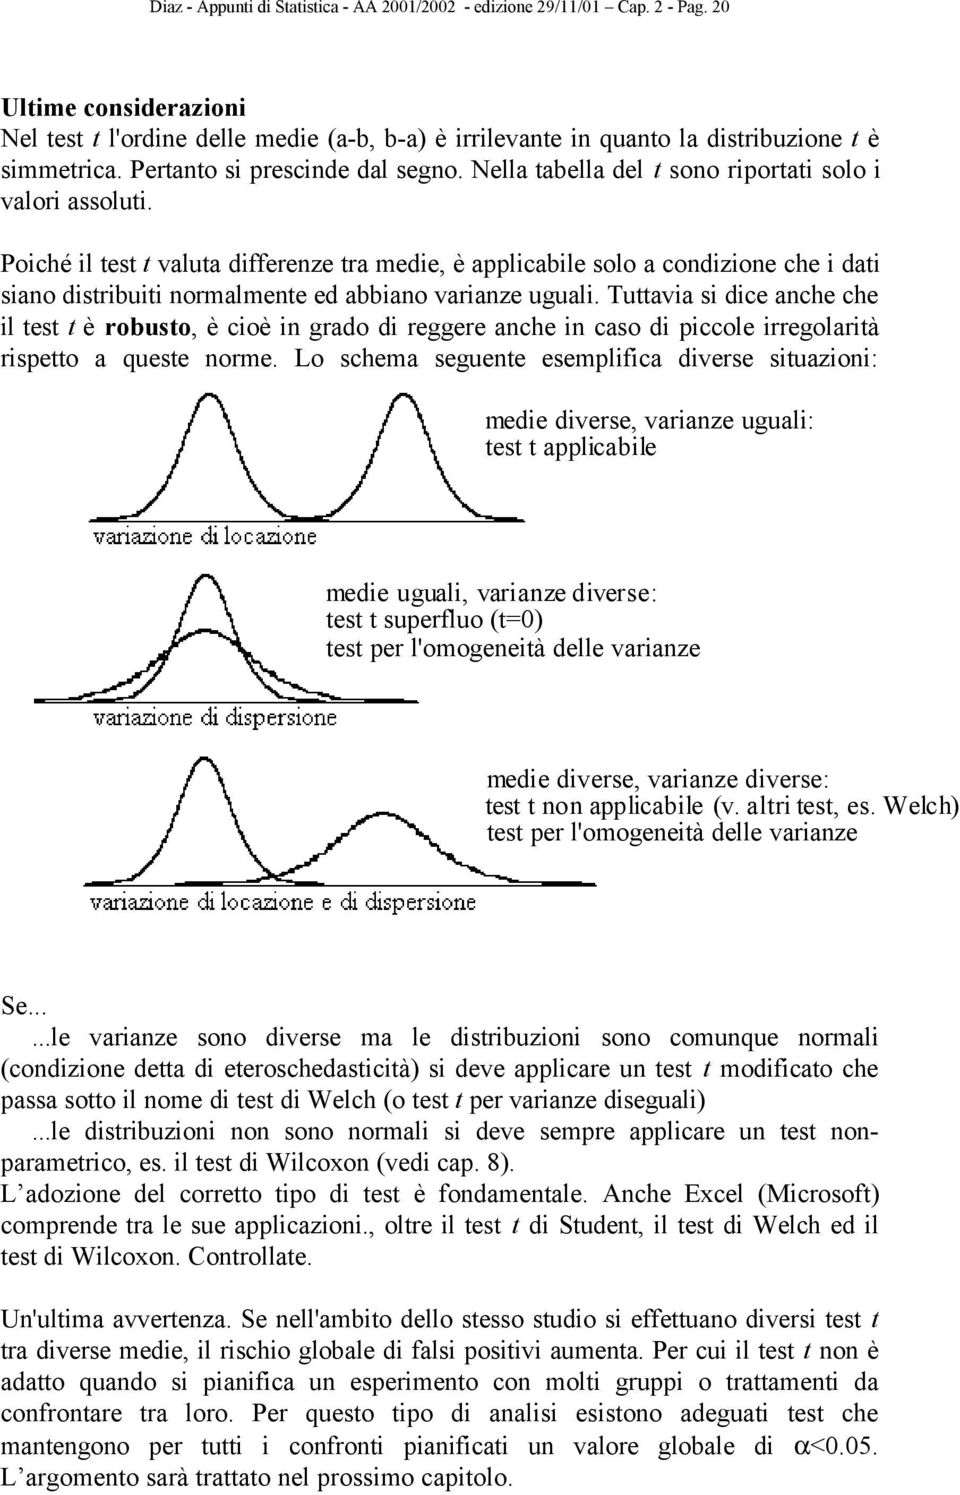 Poiché il test t vlut differenze tr medie, è pplicile solo condizione che i dti sino distriuiti normlmente ed ino vrinze uguli.